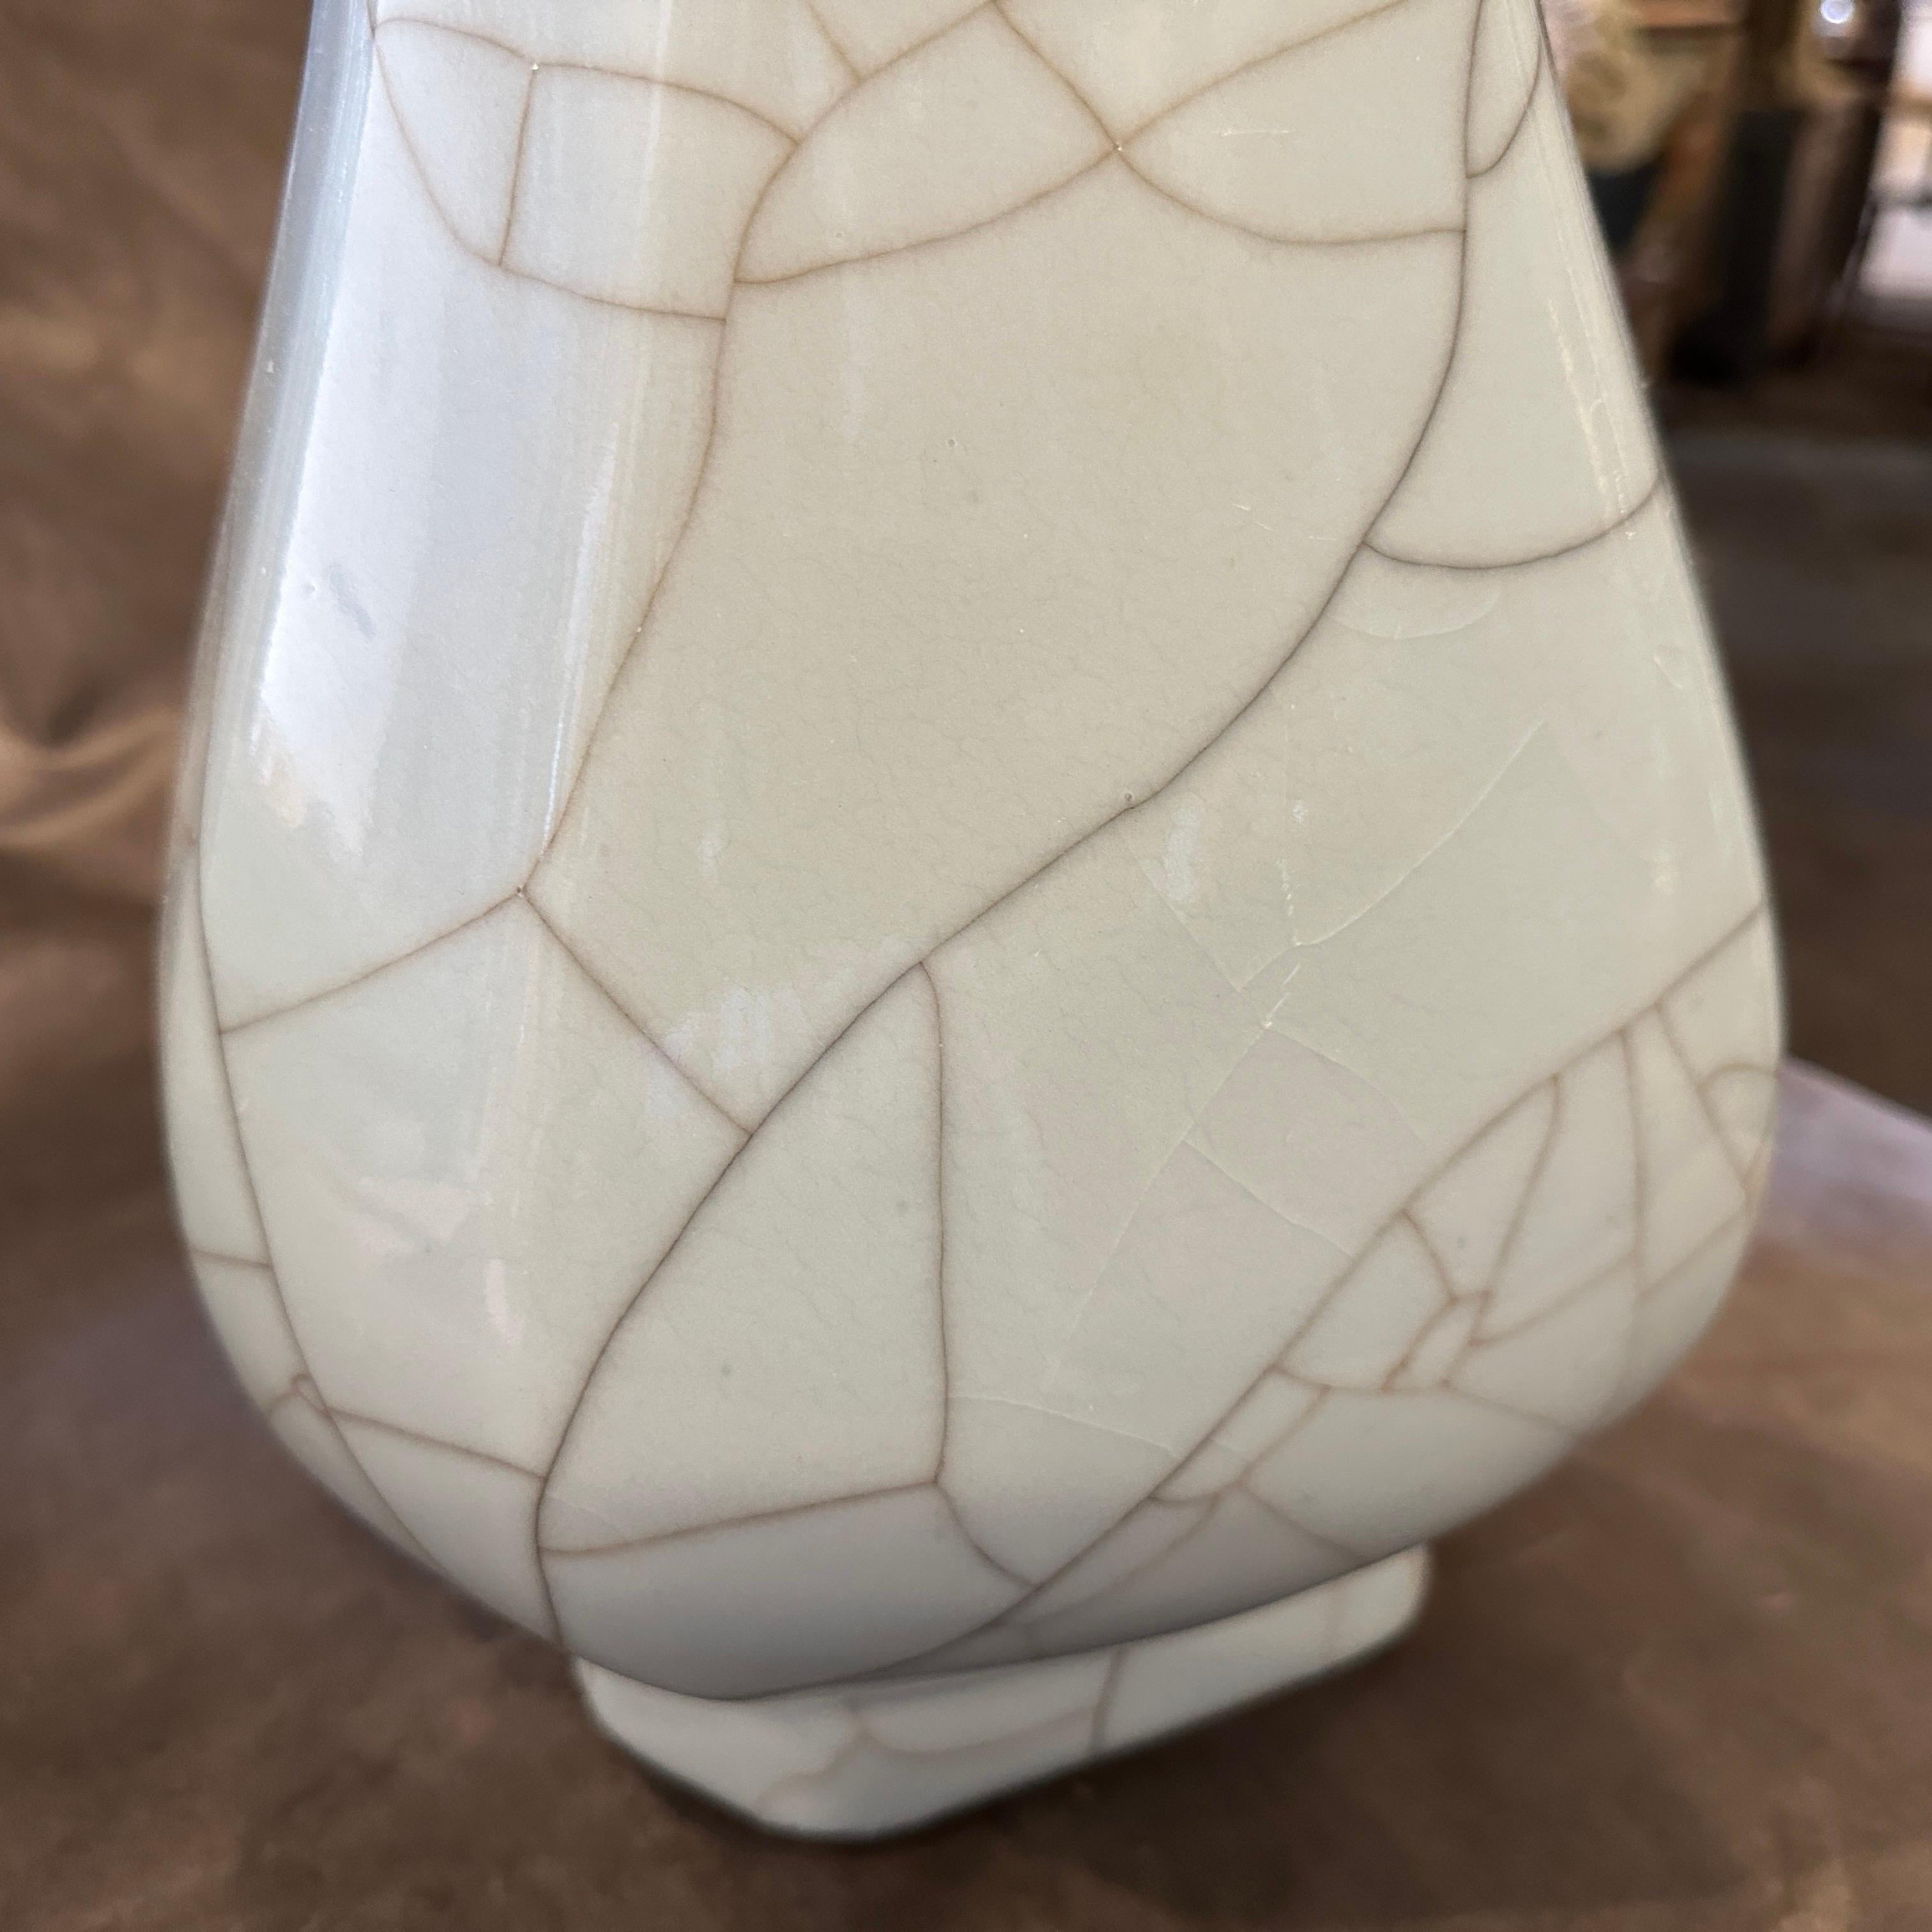 19th Century Greyish Celadon Glazed Chinese Porcelain Vase For Sale 7